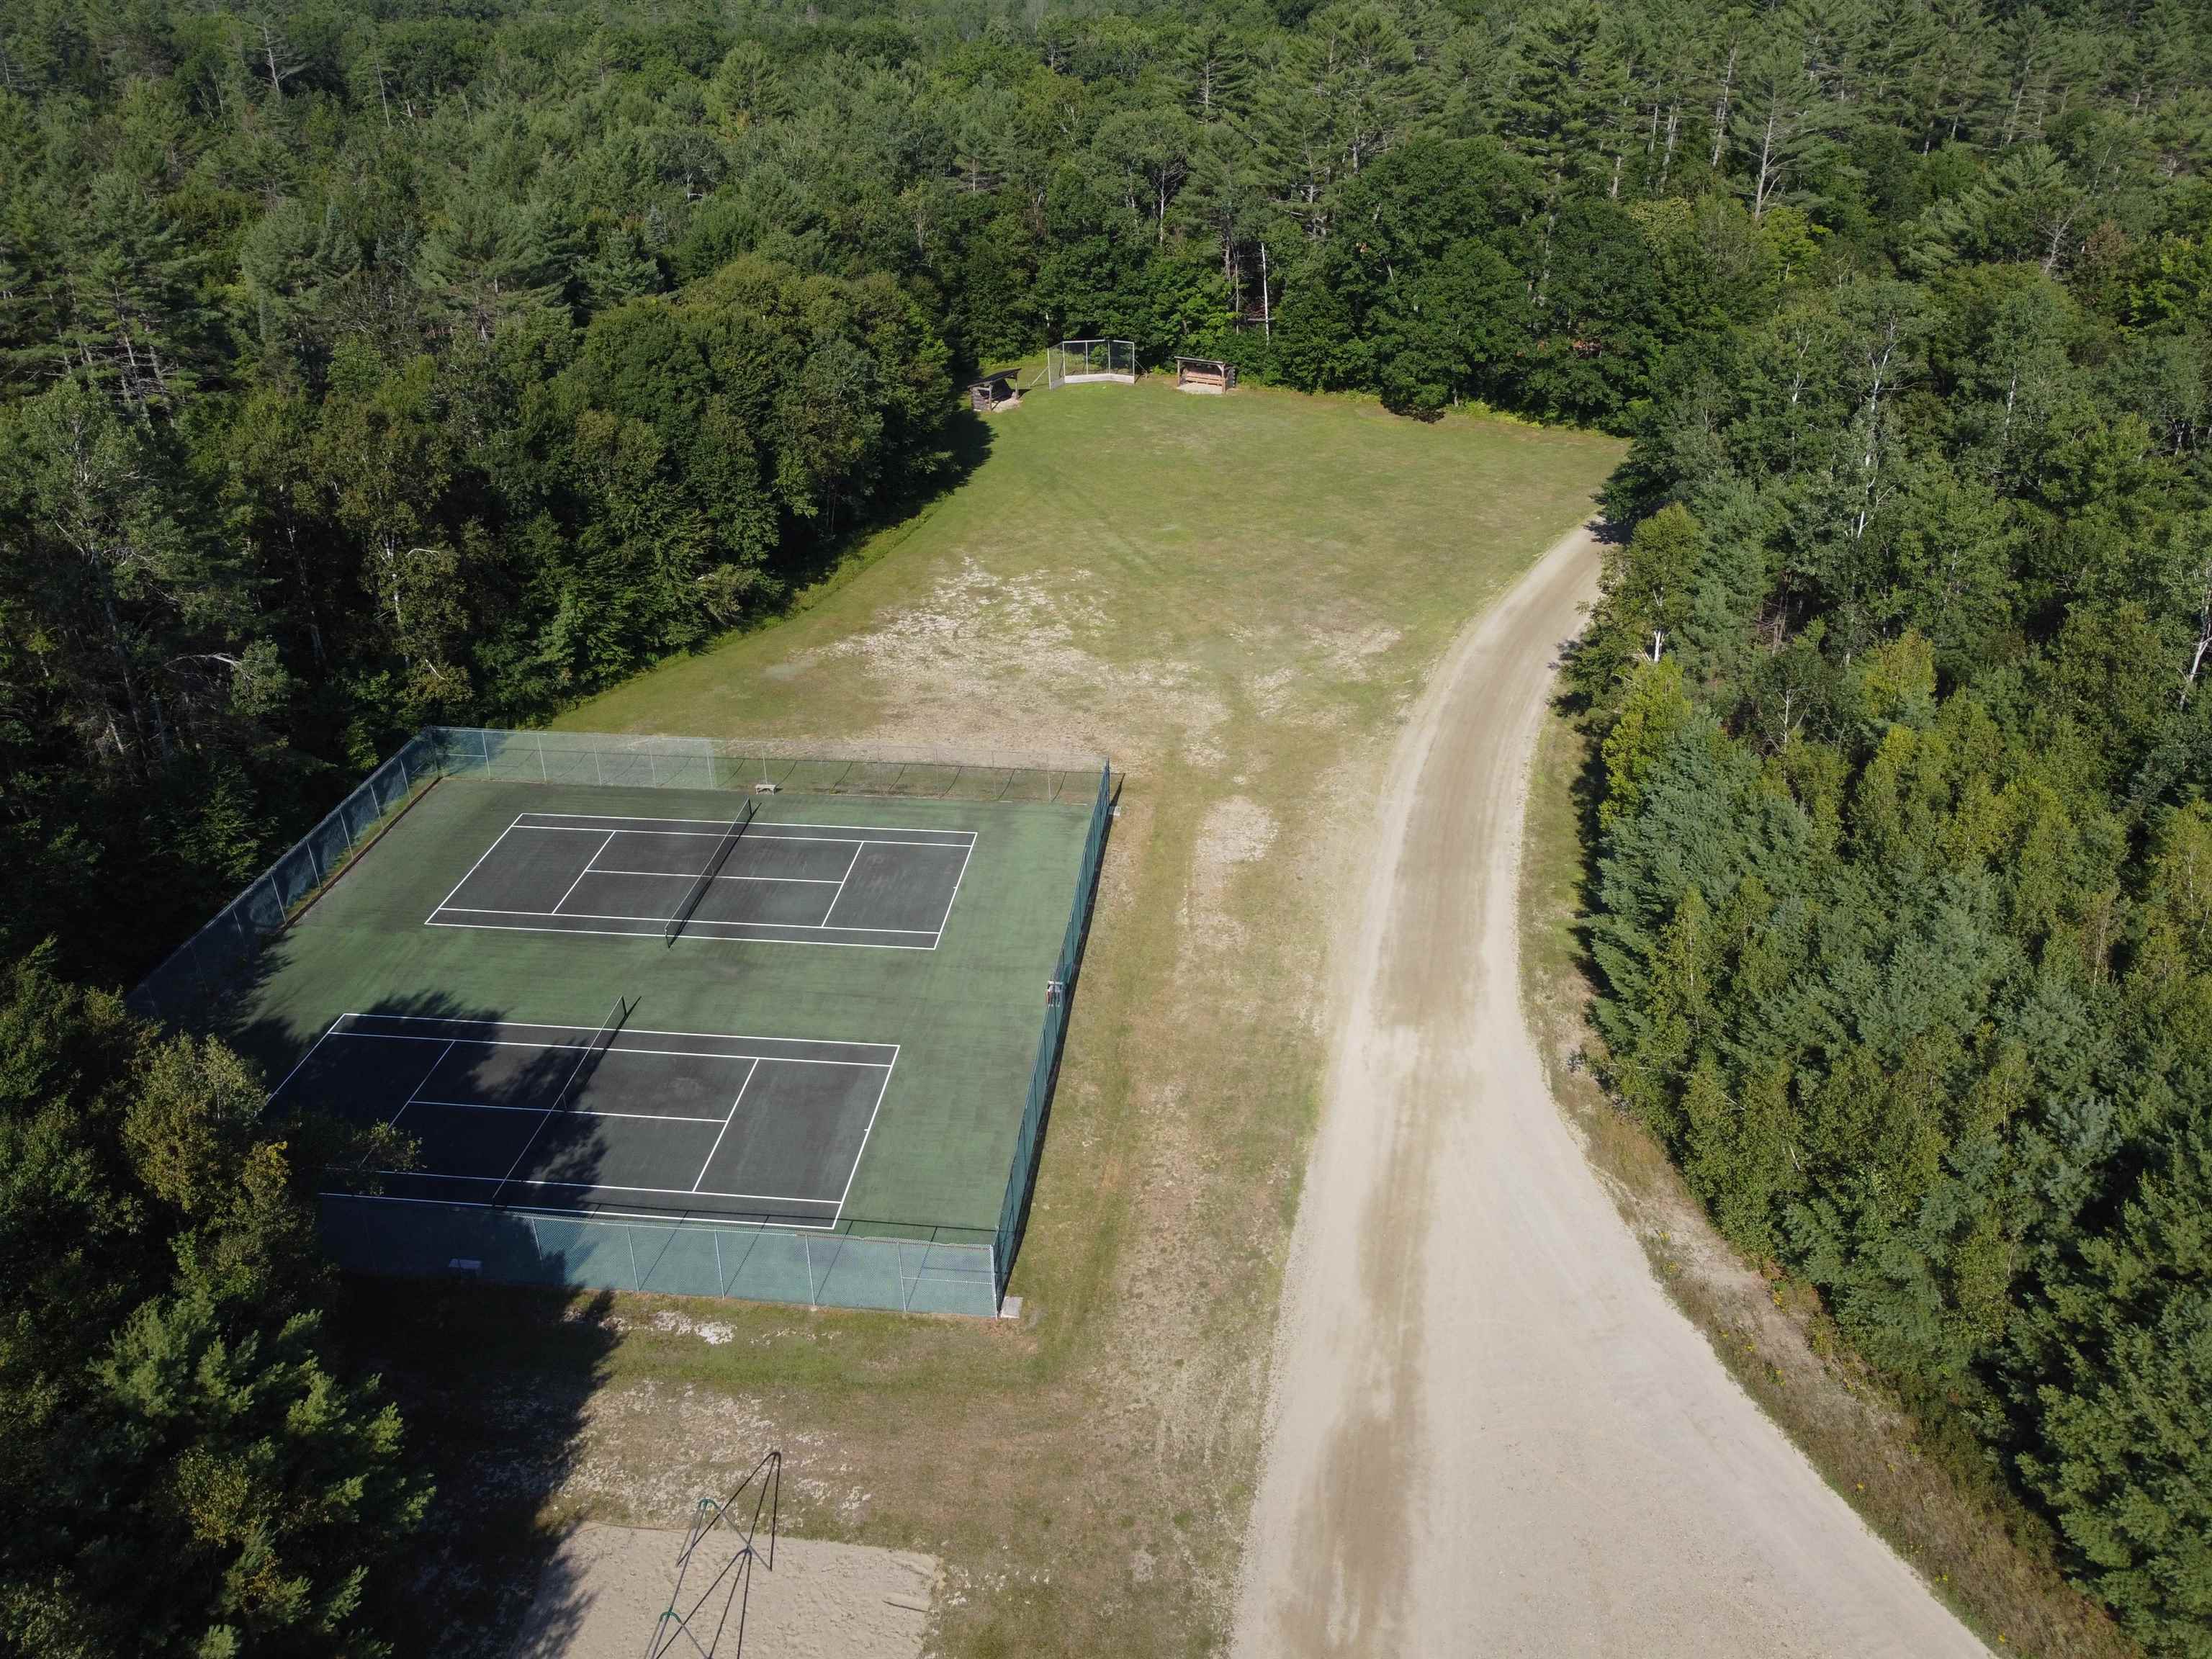 community tennis court & ball field